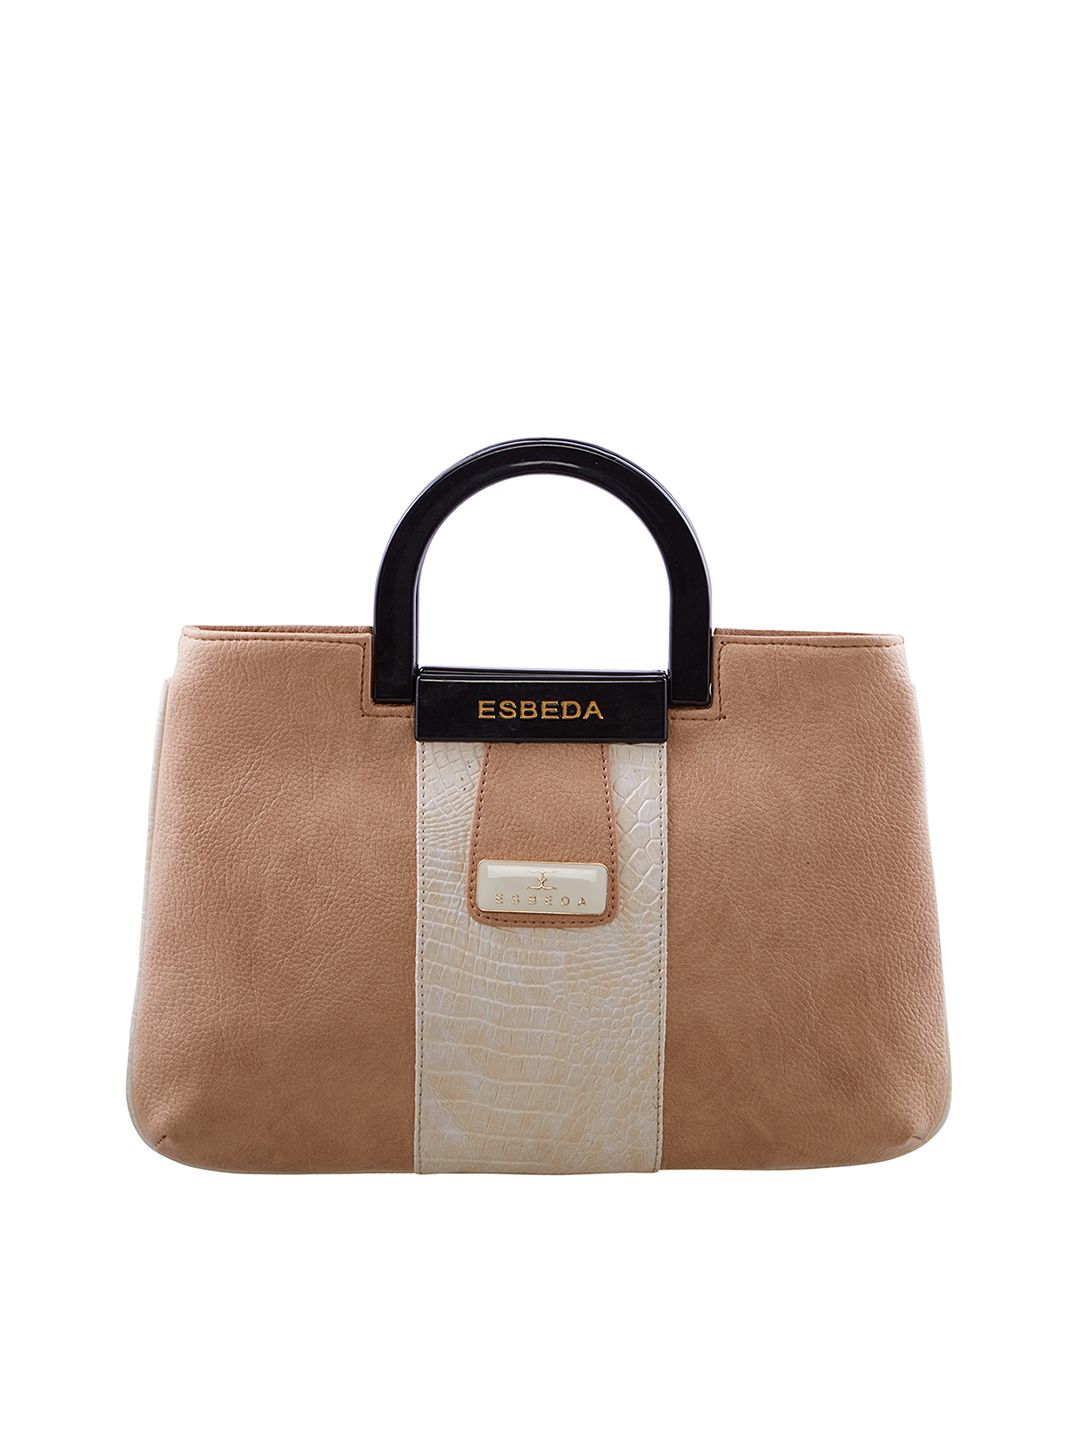 ESBEDA Brown & Beige Textured Handheld Bag Price in India